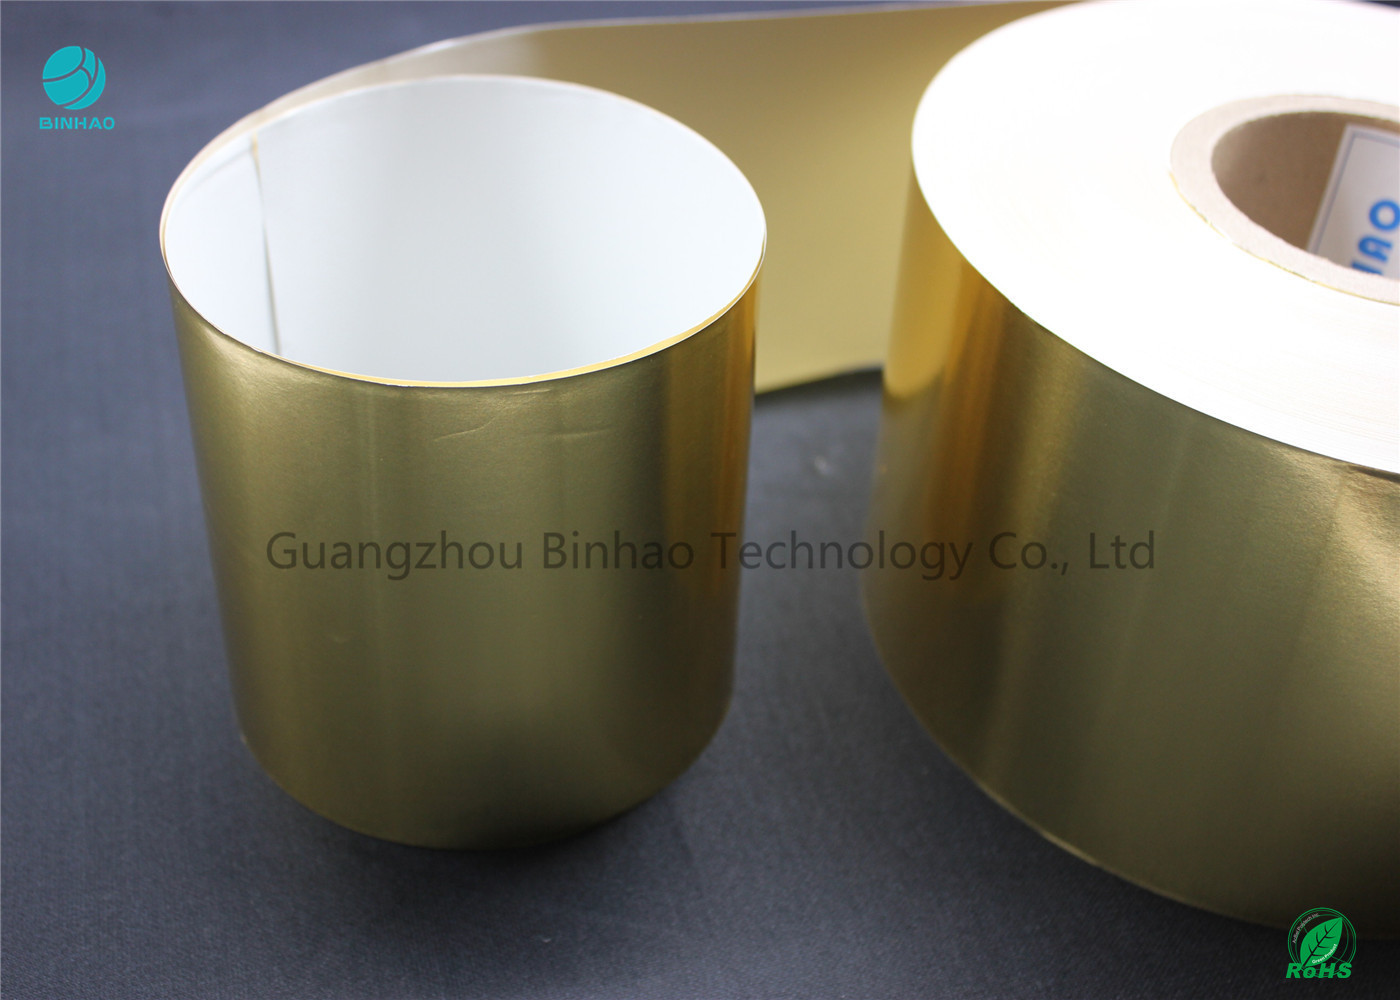 Shiny Gold Transfer Papier aluminiowy w ekologicznych materiałach 65gsm